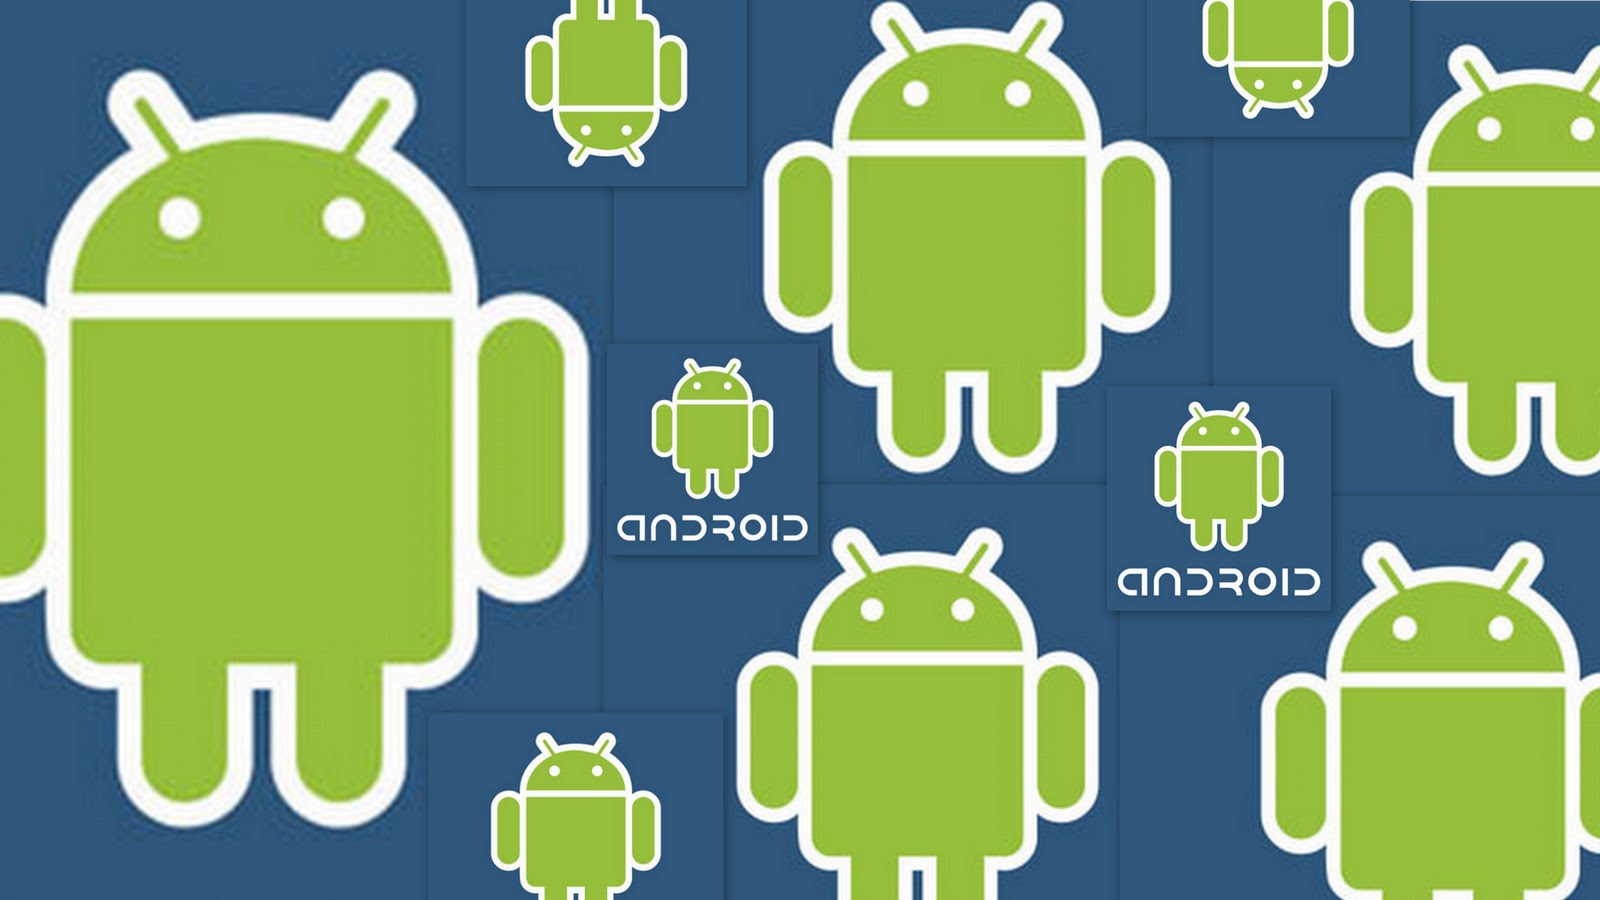 Hearthstone per Android: le specifiche tecniche!